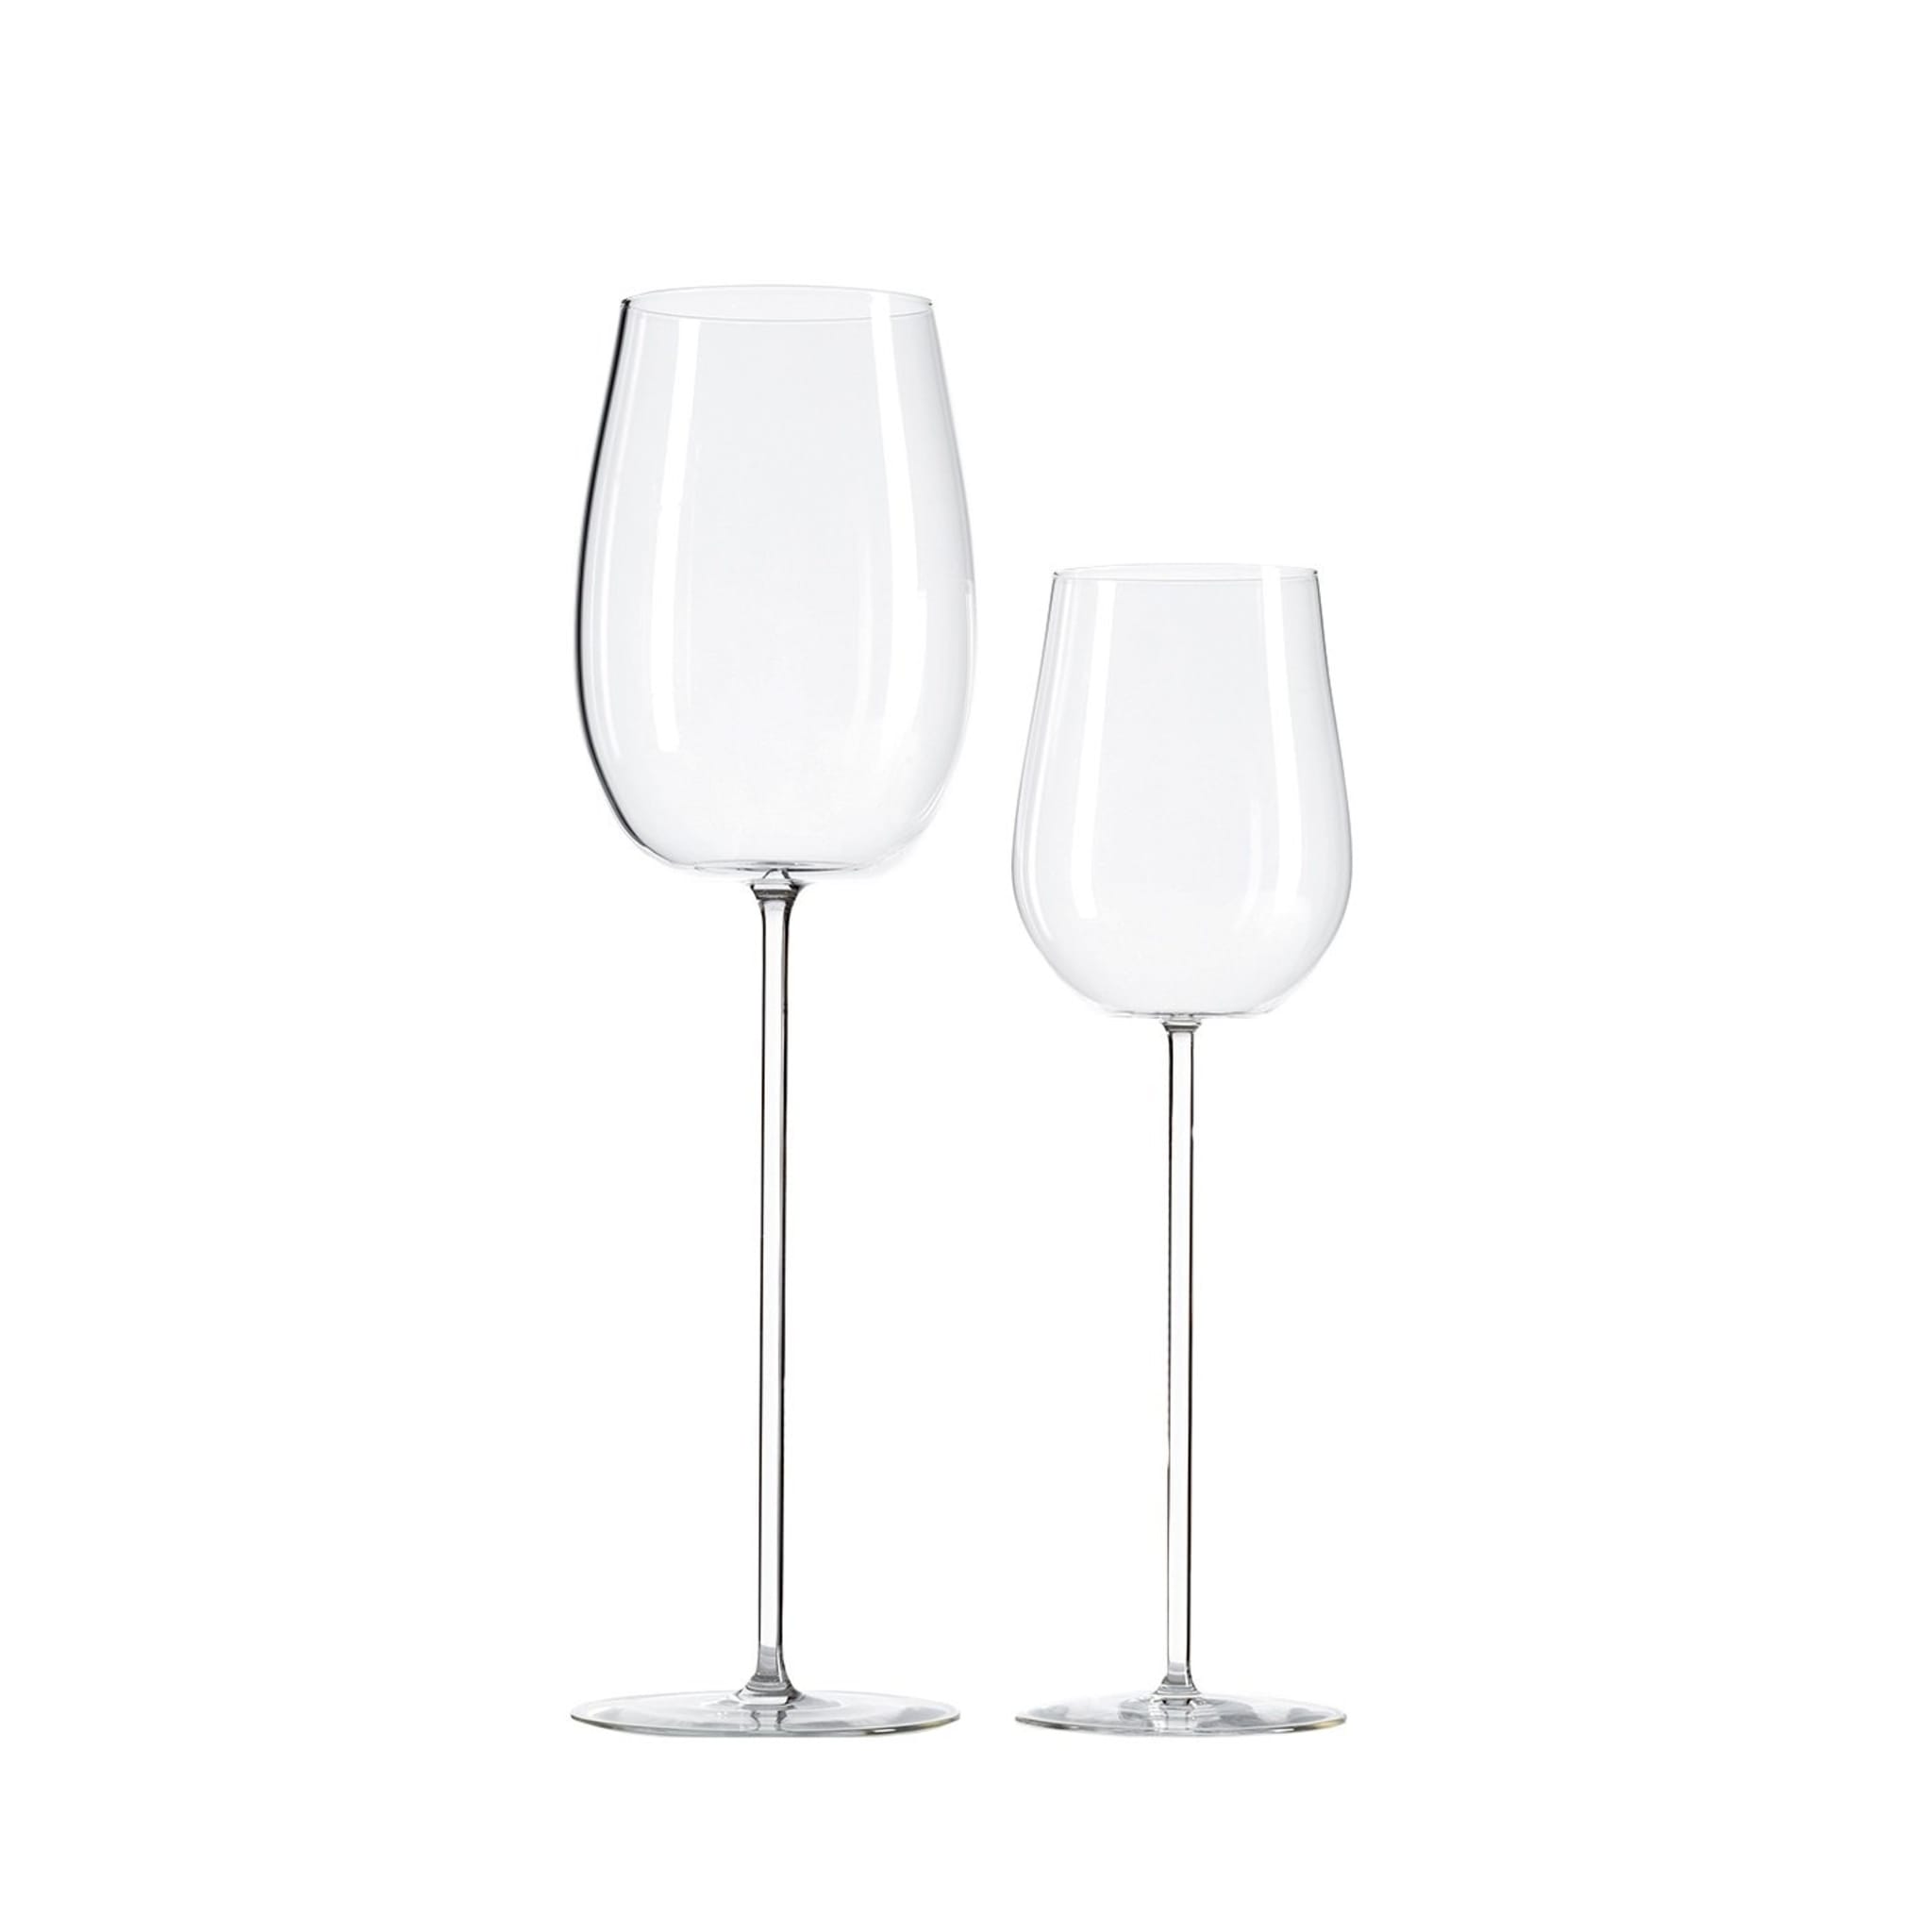 Modigliani Red & White Wine Glasses - Main view